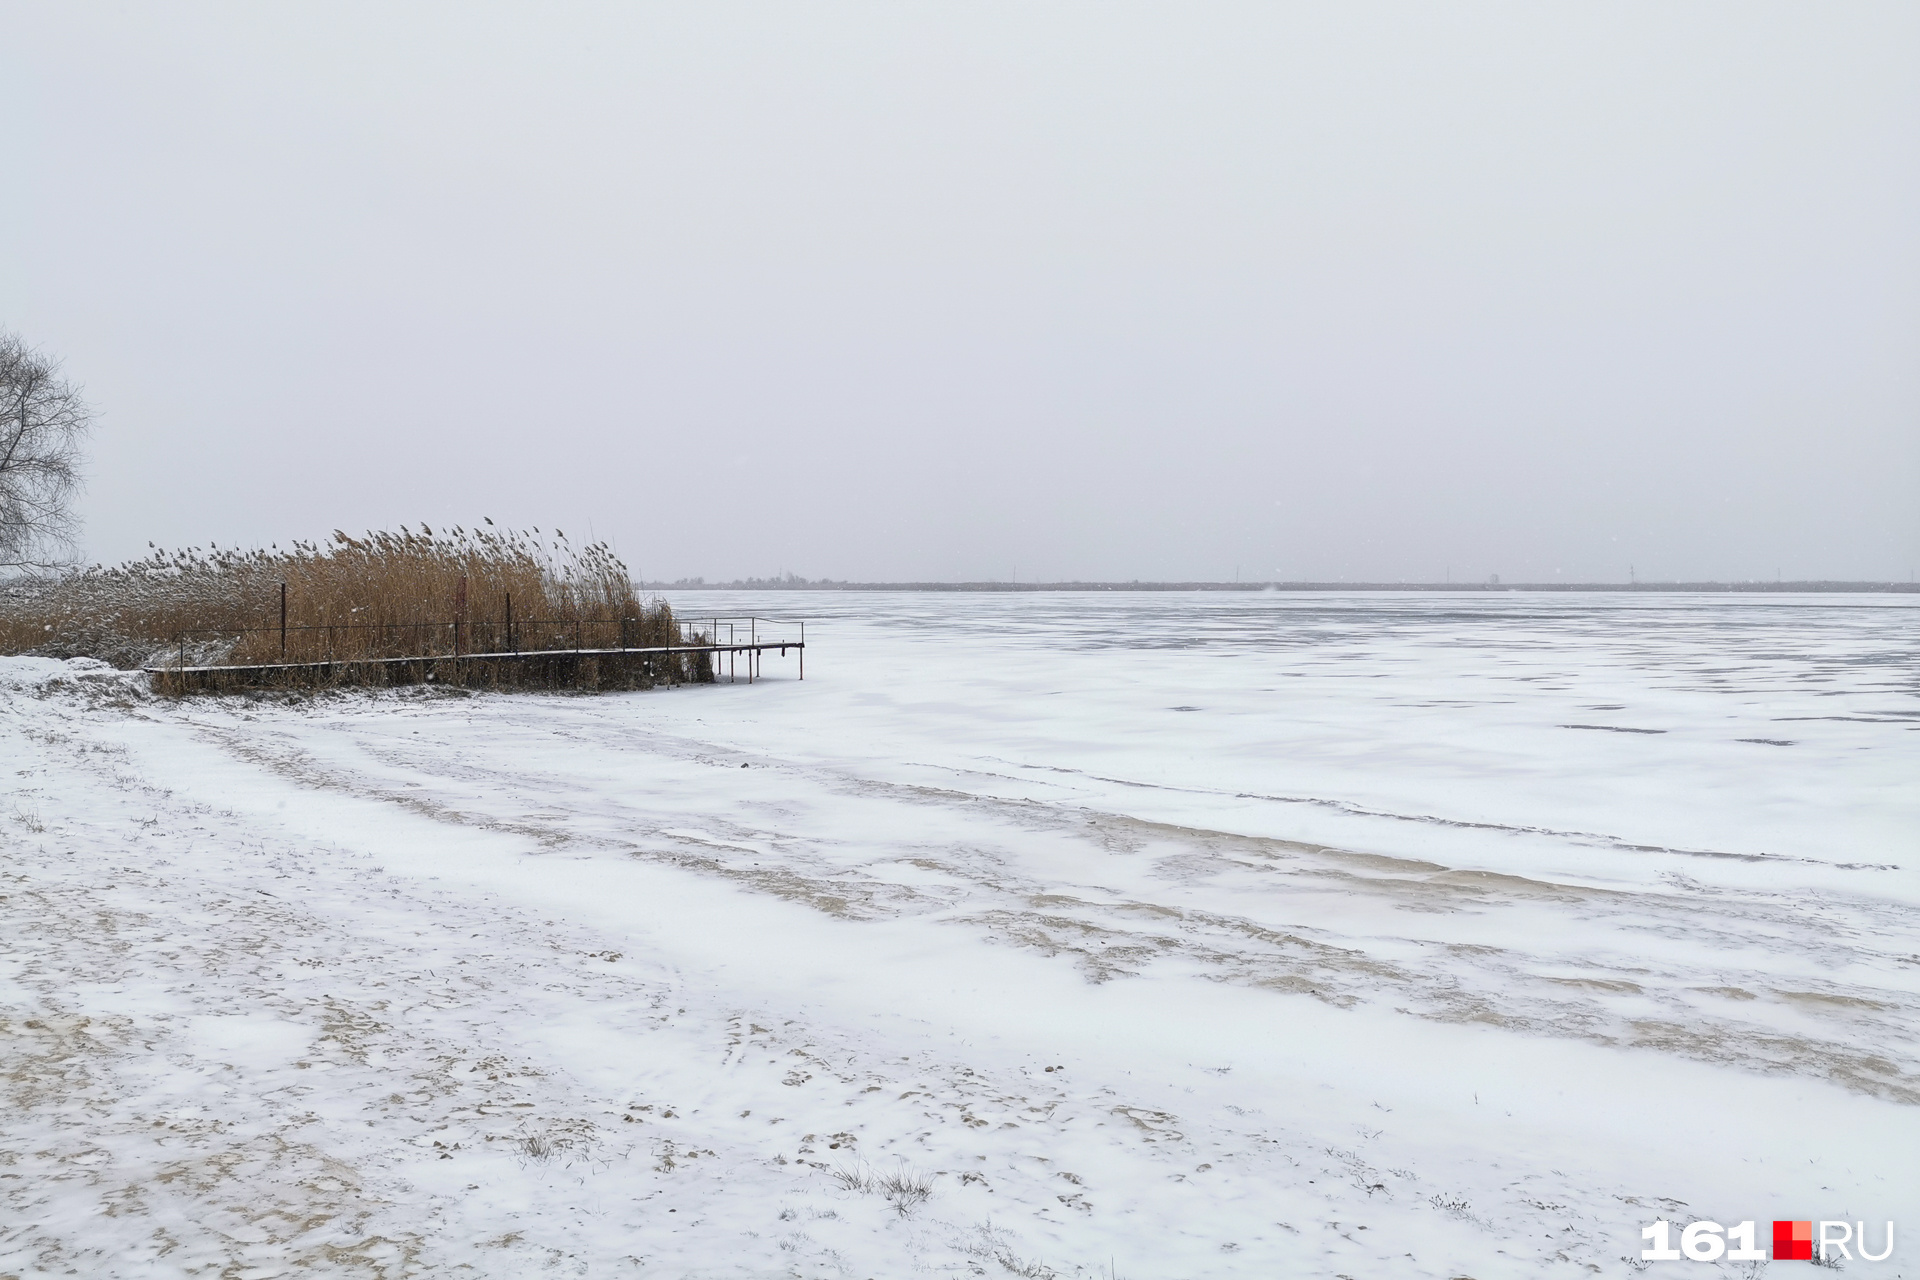 Пляж присыпало снегом, а озеро покрыло тонким льдом